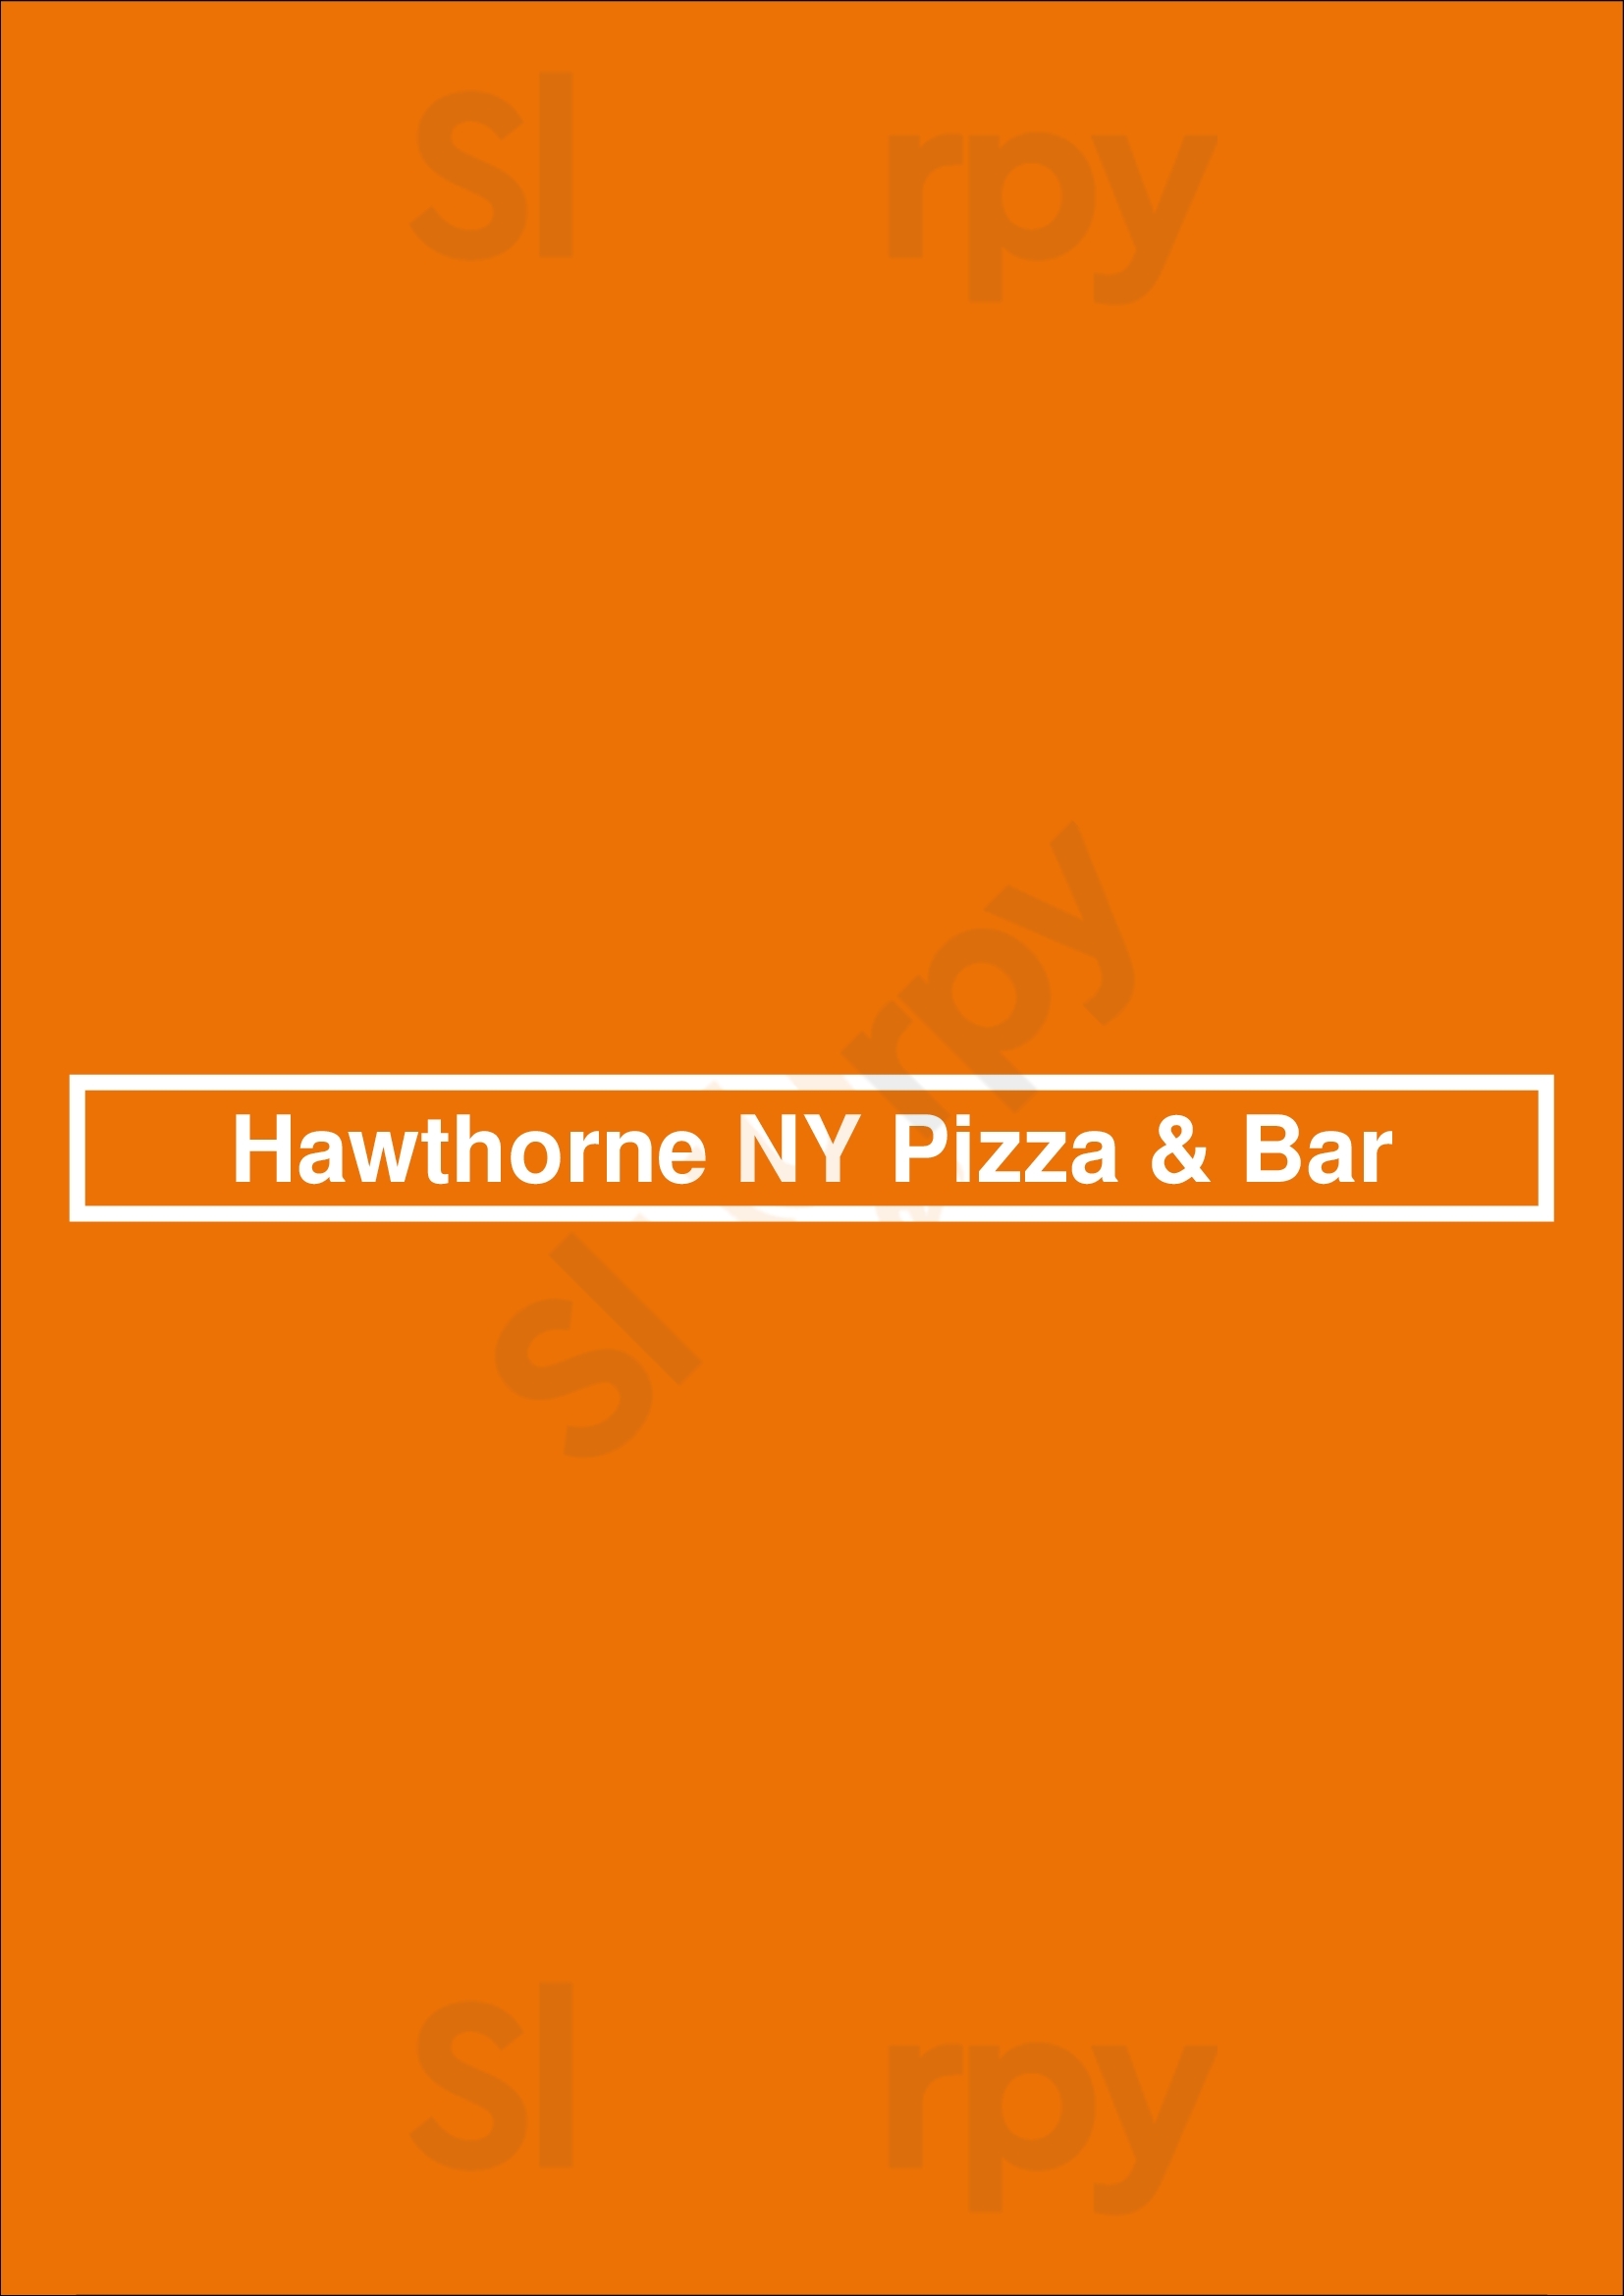 Hawthorne Ny Pizza & Bar Charlotte Menu - 1